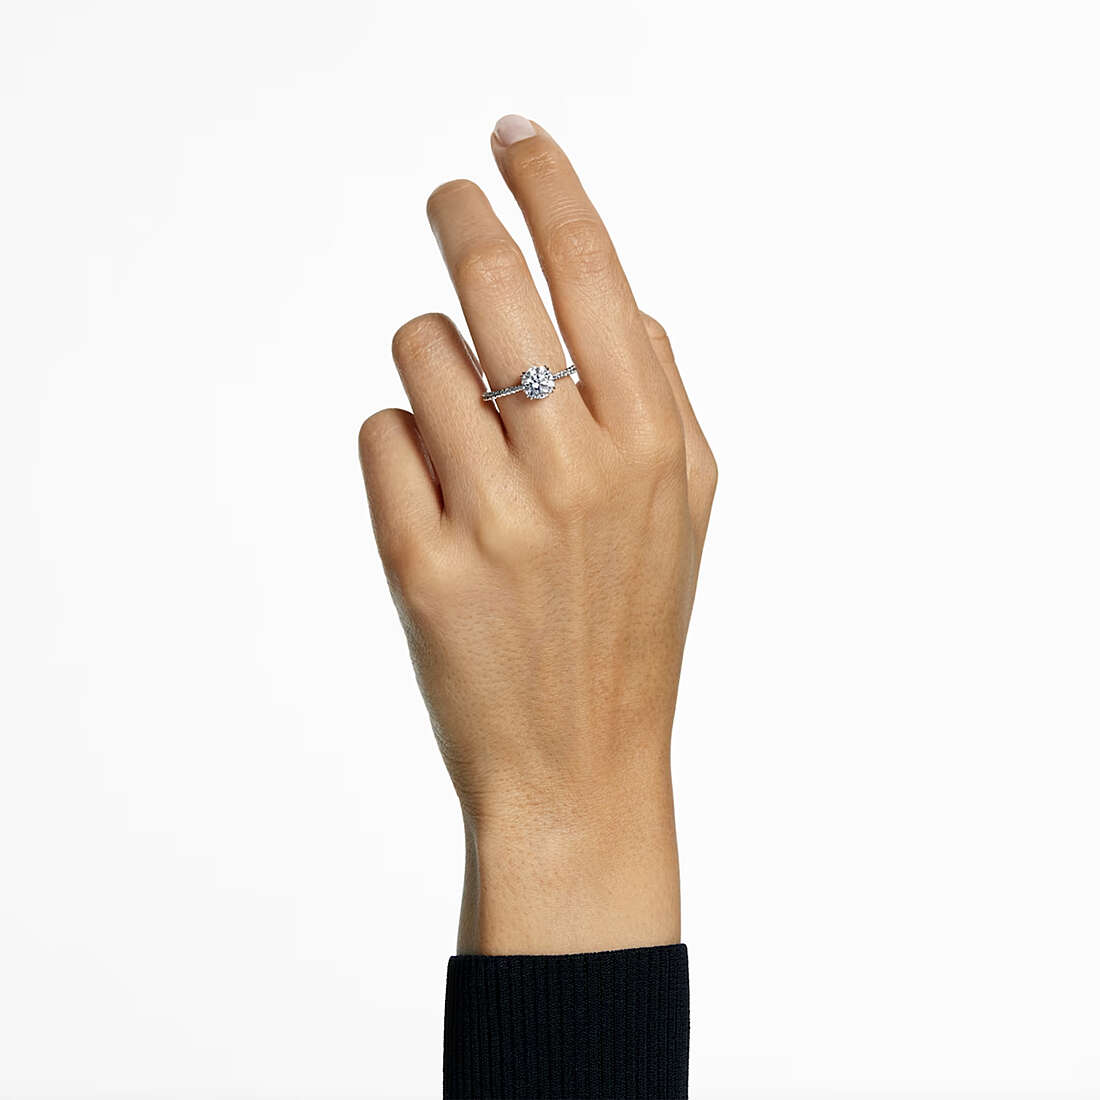 Swarovski rings Constella woman 5645250 wearing